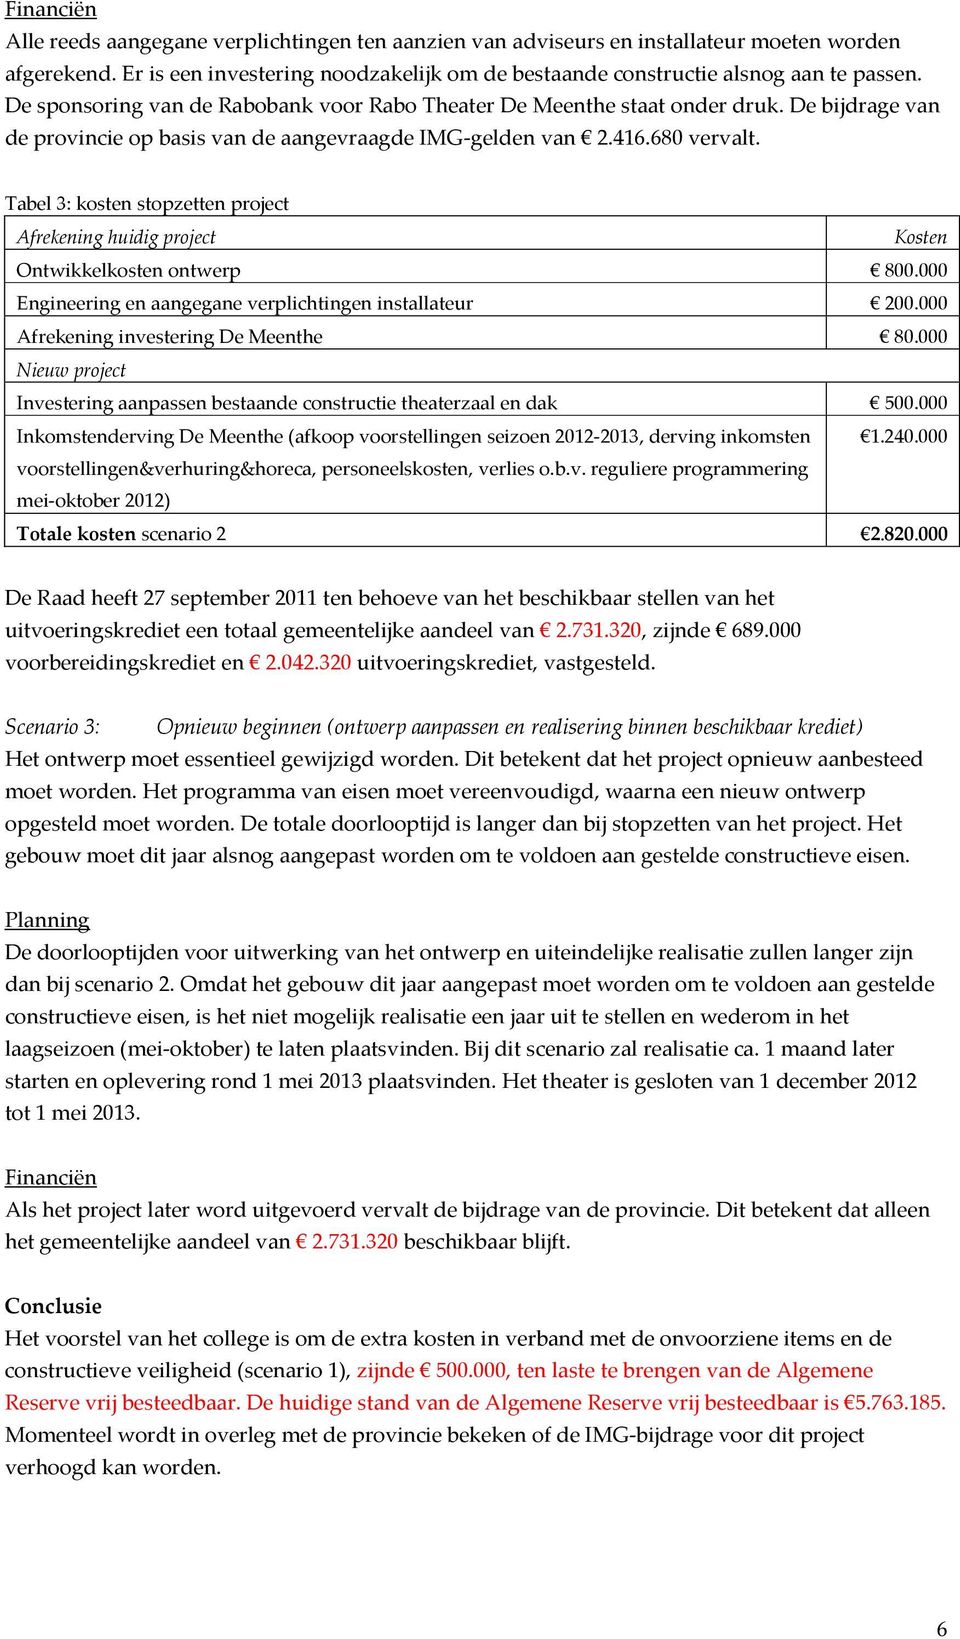 Tabel 3: kosten stopzetten project Afrekening huidig project Kosten Ontwikkelkosten ontwerp 800.000 Engineering en aangegane verplichtingen installateur 200.000 Afrekening investering De Meenthe 80.